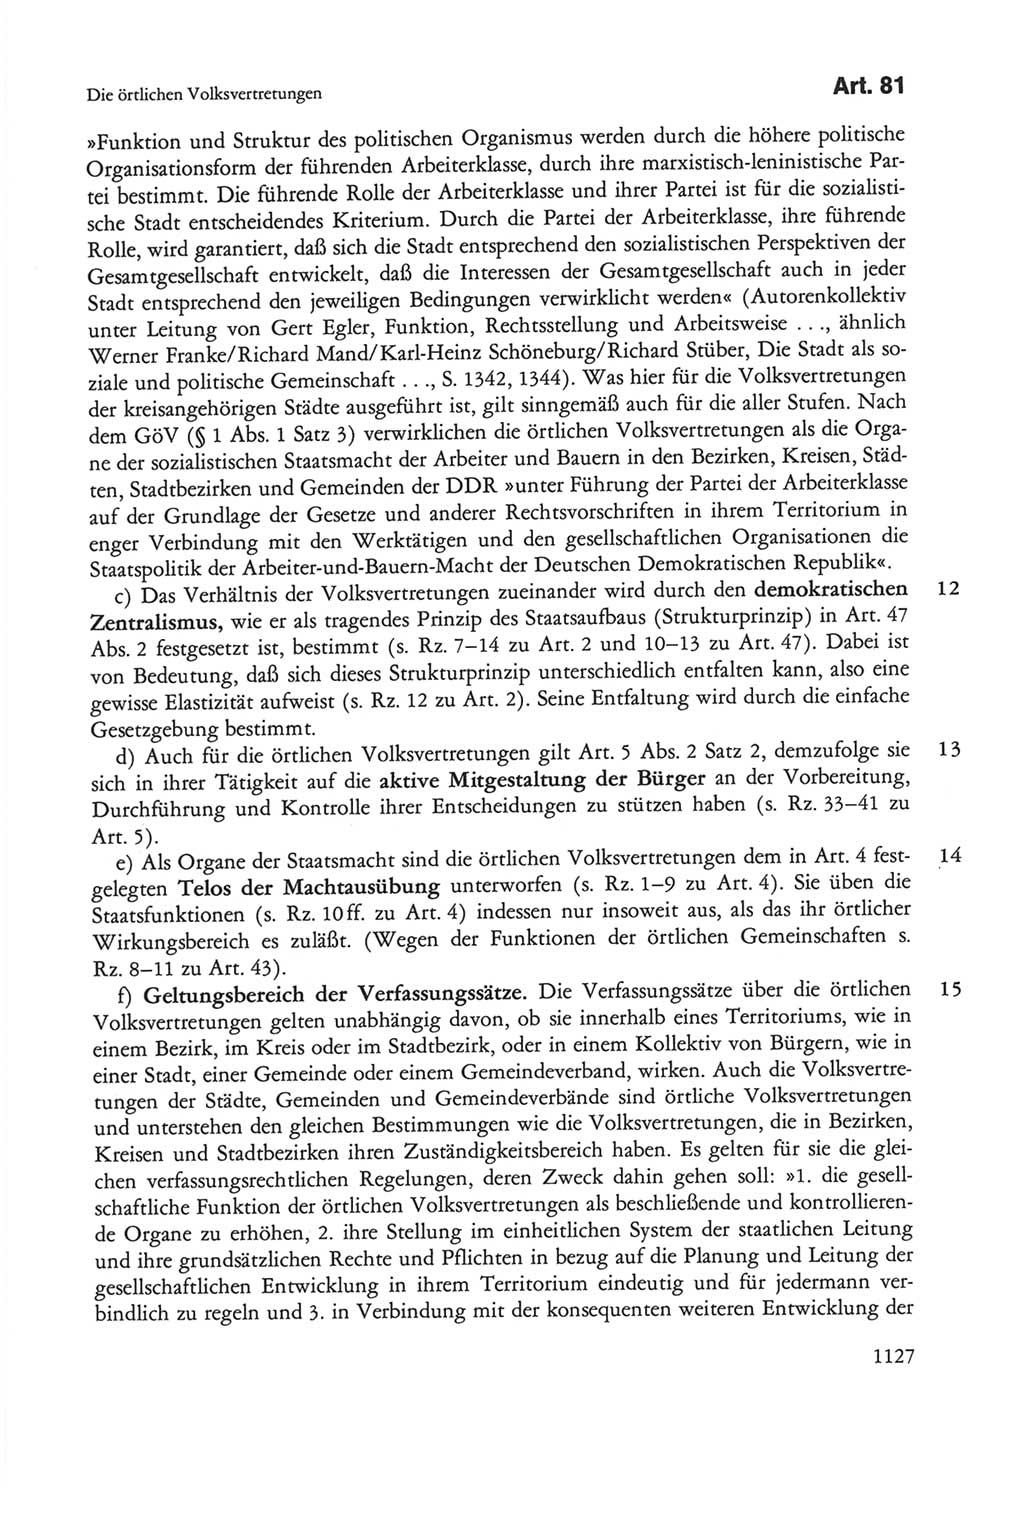 Die sozialistische Verfassung der Deutschen Demokratischen Republik (DDR), Kommentar mit einem Nachtrag 1997, Seite 1127 (Soz. Verf. DDR Komm. Nachtr. 1997, S. 1127)